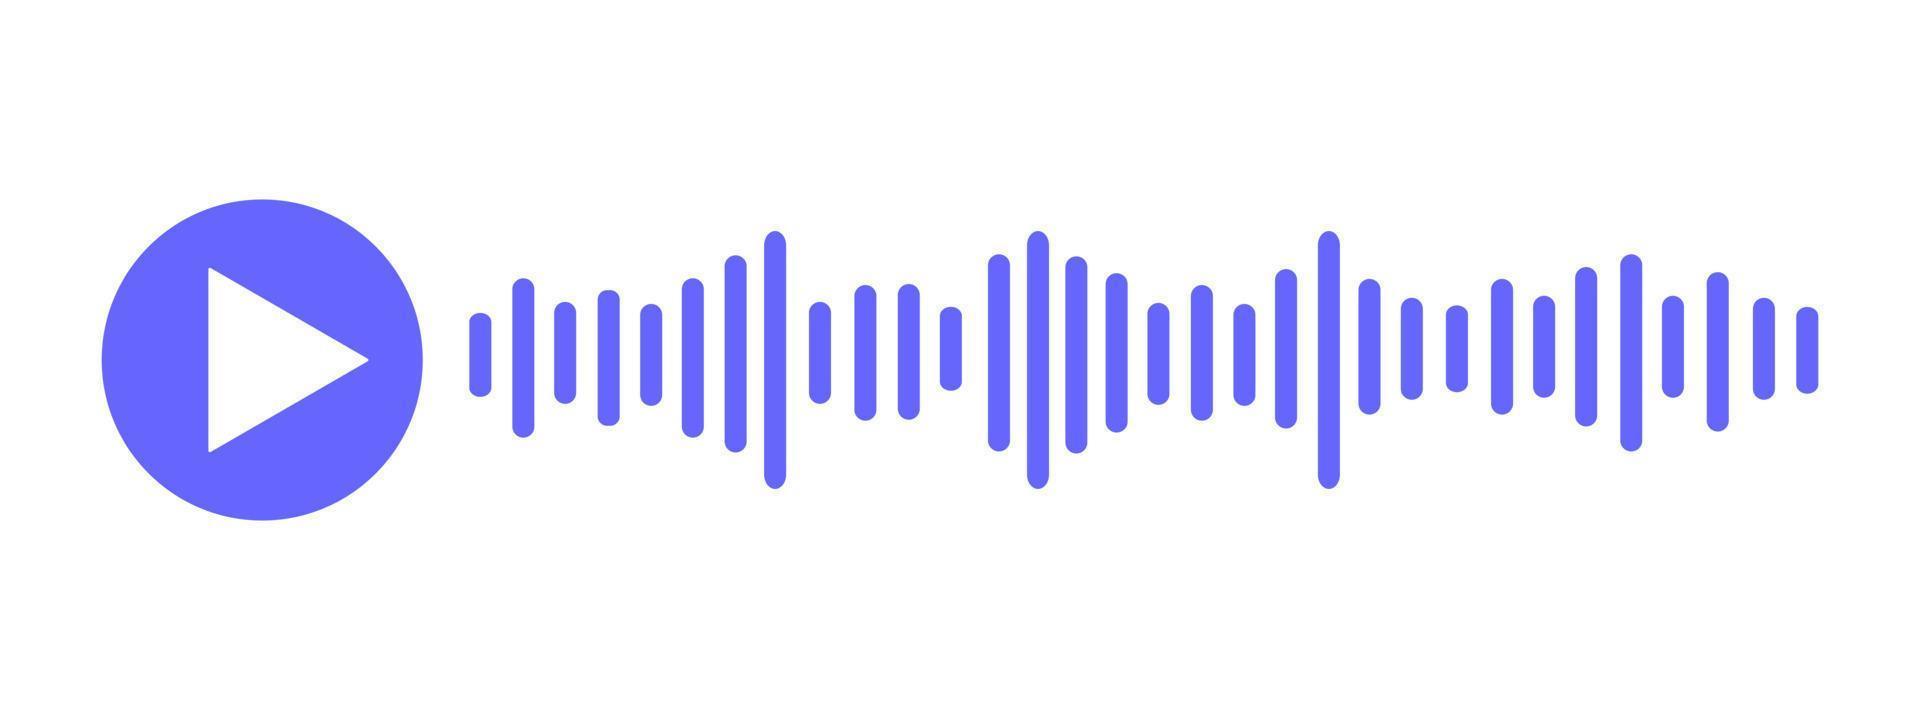 Voicemail unterzeichnen. Audio- Konversation Konzept. Wiedergabe Symbol mit Rede Klang Welle. Element von Handy, Mobiltelefon Bote App Schnittstelle vektor